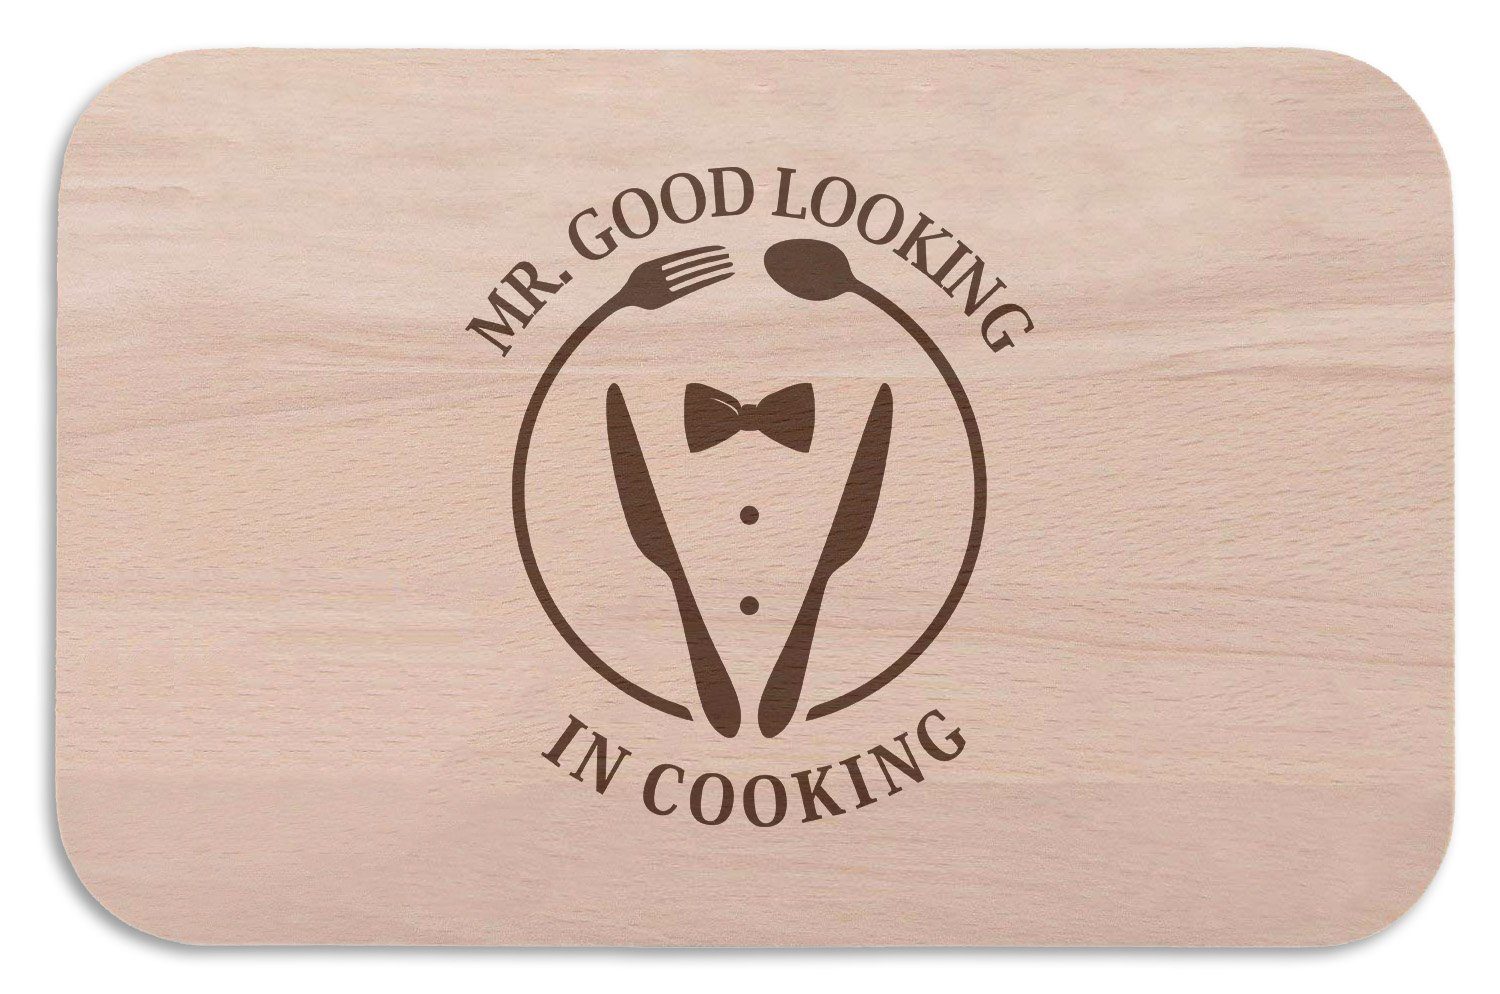 GRAVURZEILE Schneidebrett Frühstücksbrettchen Brotzeitbrett mit Gravur - Mr good Looking in Cooking - Geschenk für den Papa & Ehemann, (Kein Set)